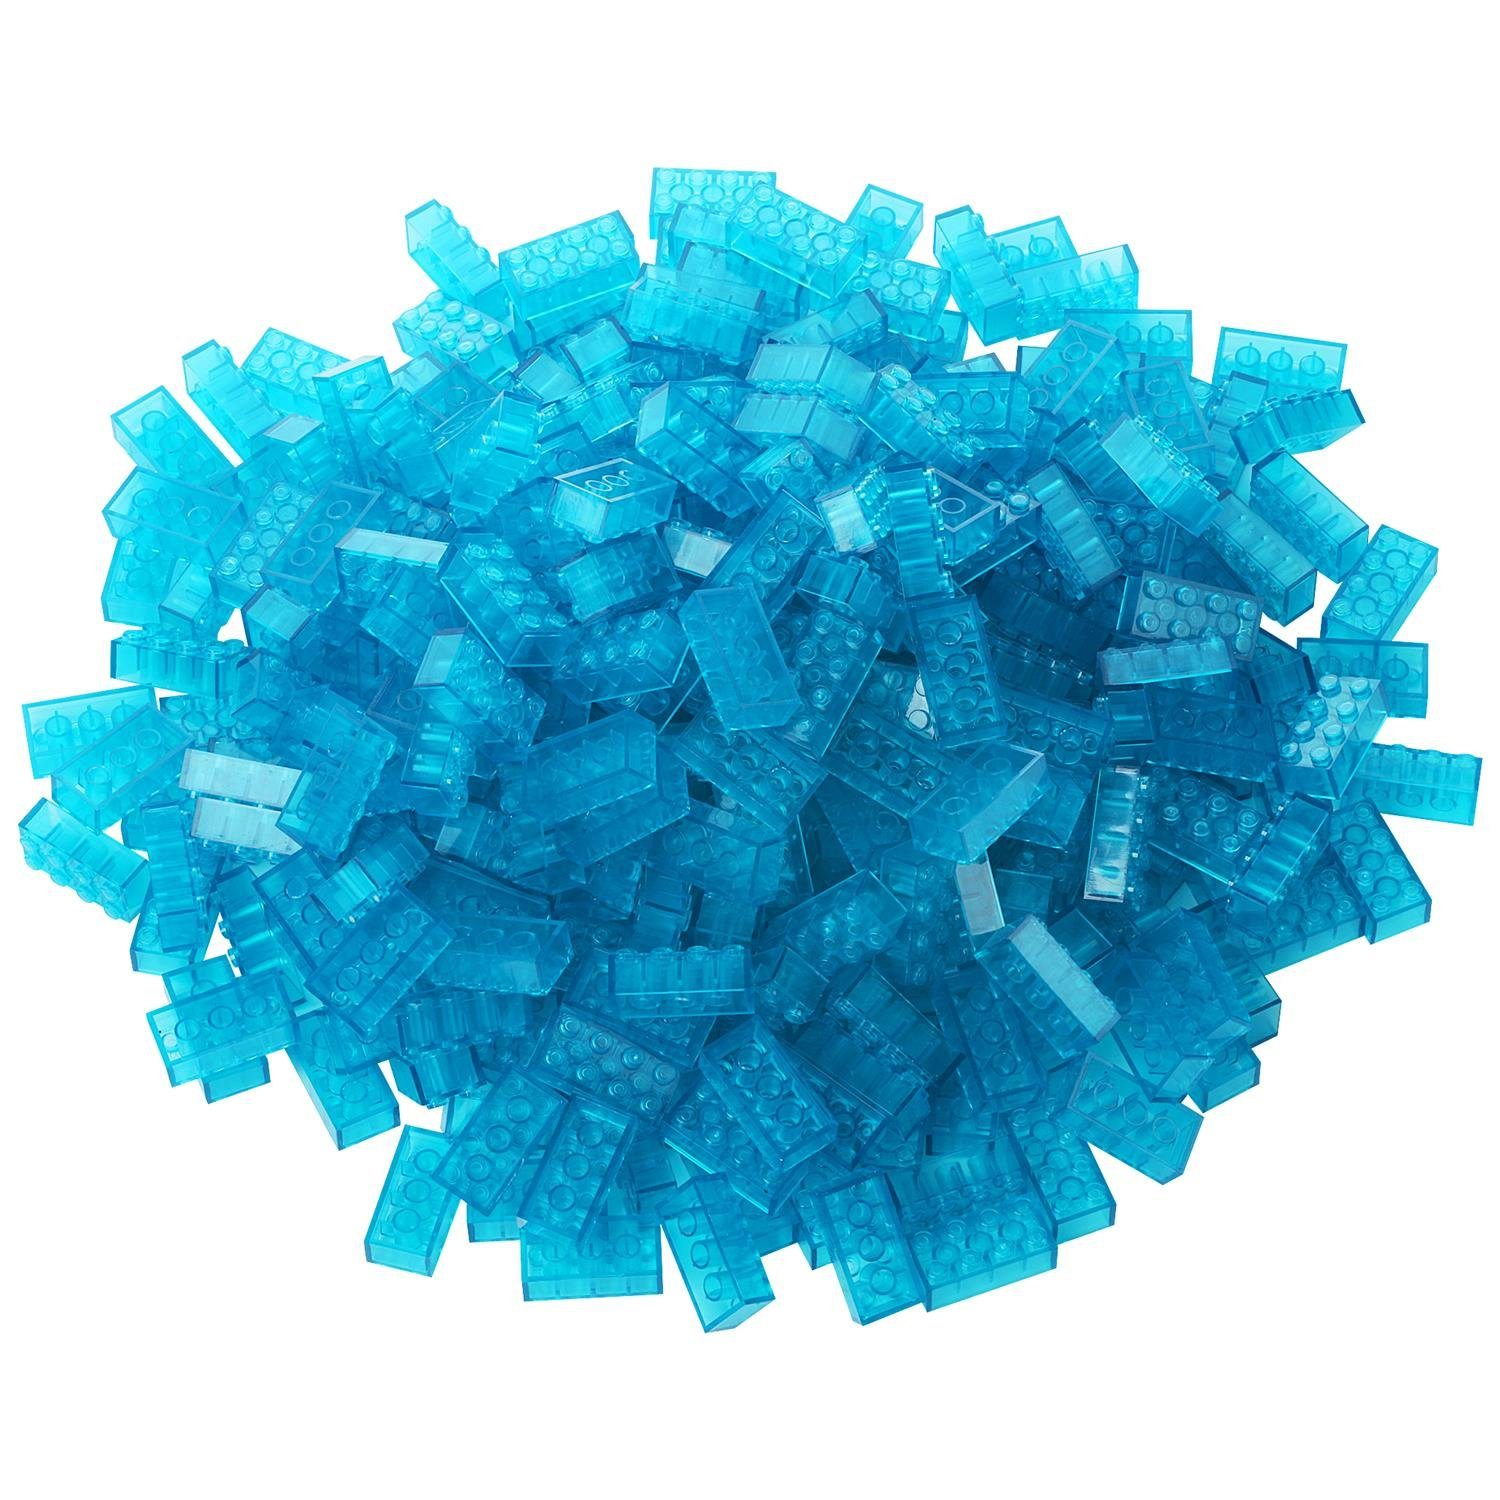 Herstellern allen - Bausteine Kompatibel Box-Set + + Konstruktionsspielsteine Anderen zu Katara Steinen Box, mit Platte Set), verschiedene Farben (3er 520 transparent-blau